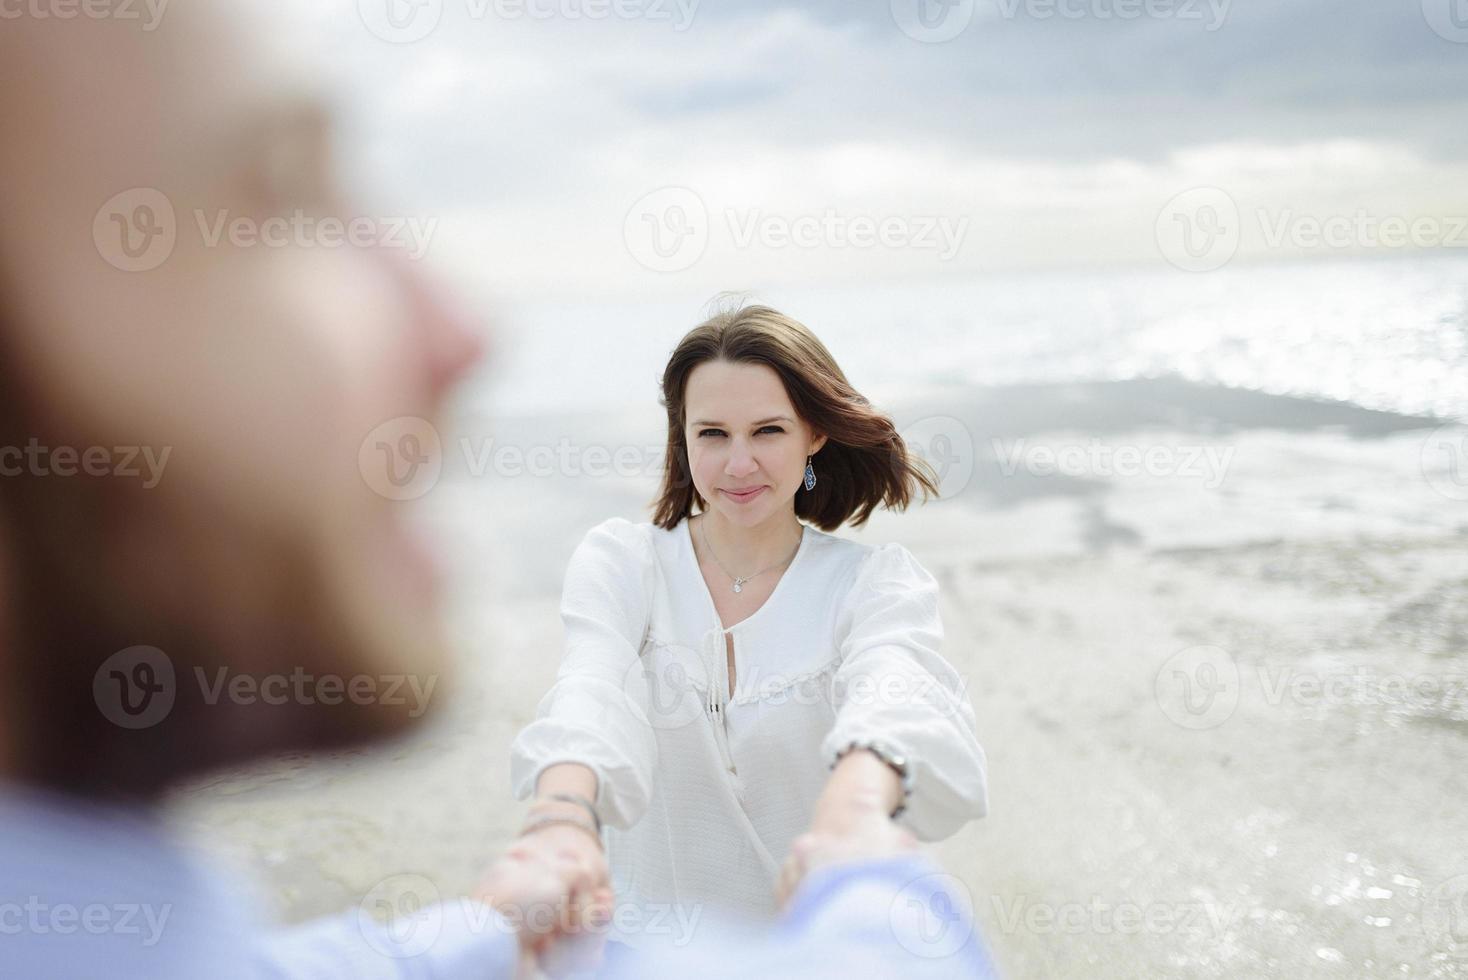 een liefdevol stel, man en vrouw die van de zomervakantie genieten op een tropisch paradijsstrand met helder zee-oceaanwater en landschap foto